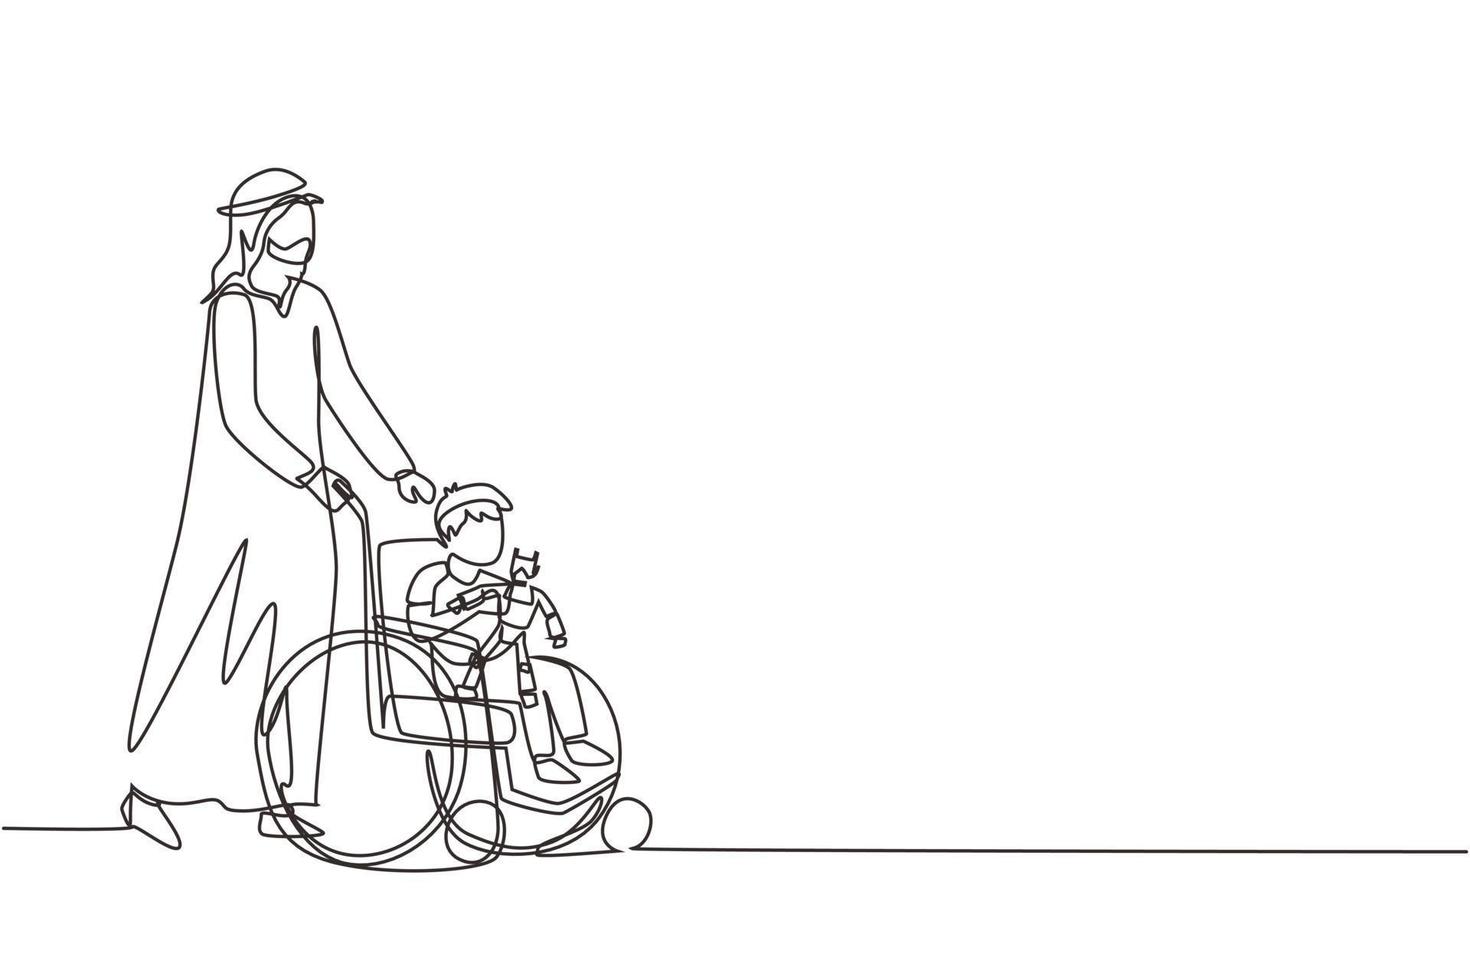 rééducation de dessin en ligne continue unique pour les enfants. le père arabe prend soin du garçon. papa heureux aide les enfants handicapés en fauteuil roulant à tenir un jouet robot. vecteur de conception de dessin d'une ligne